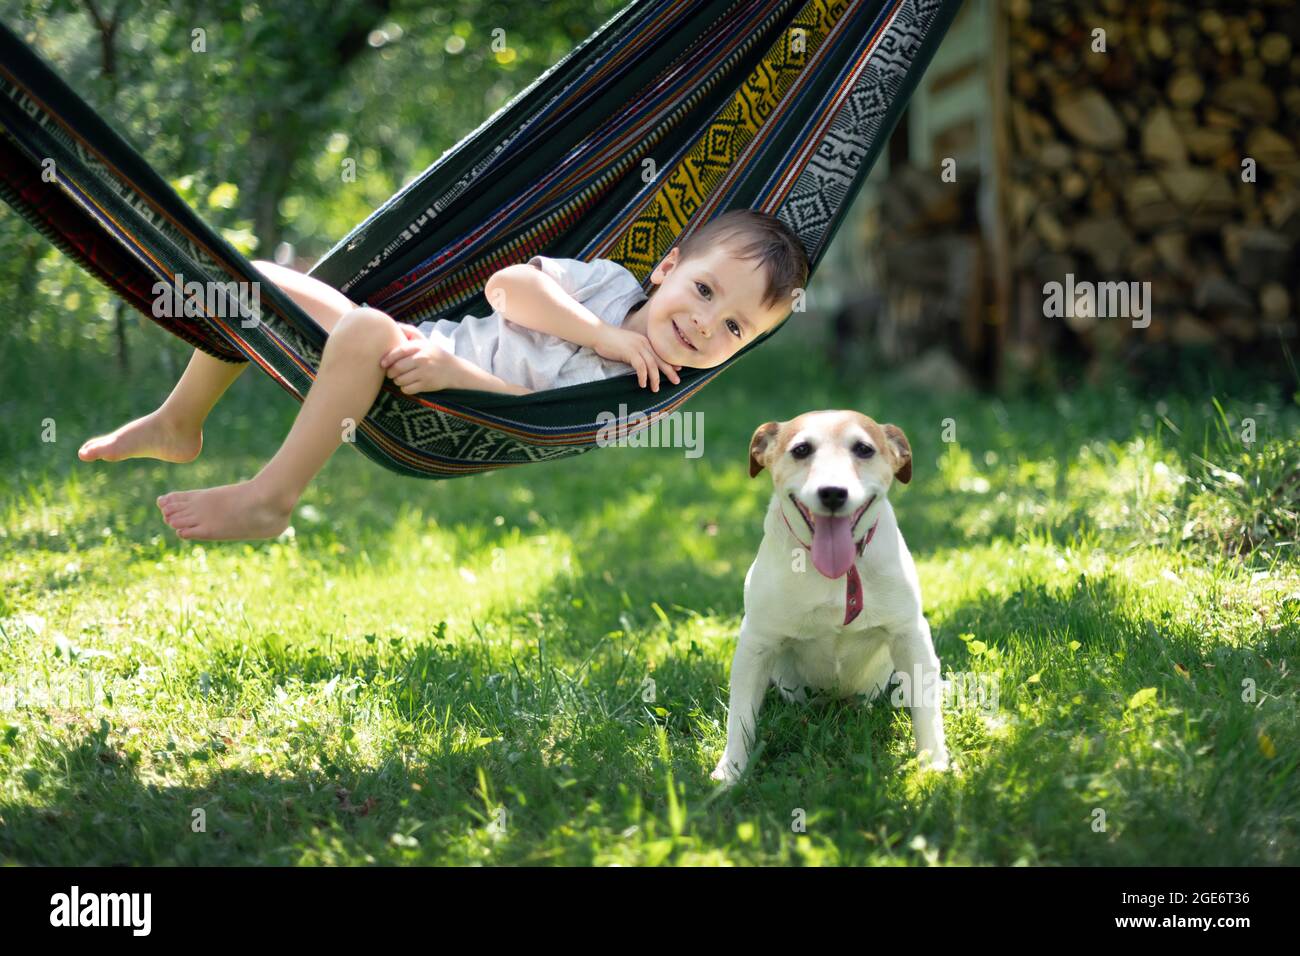 Petit enfant sur hamac avec chien blanc chiot race Jack russel terrier sur cour d'été. Concept d'enfance heureuse Banque D'Images